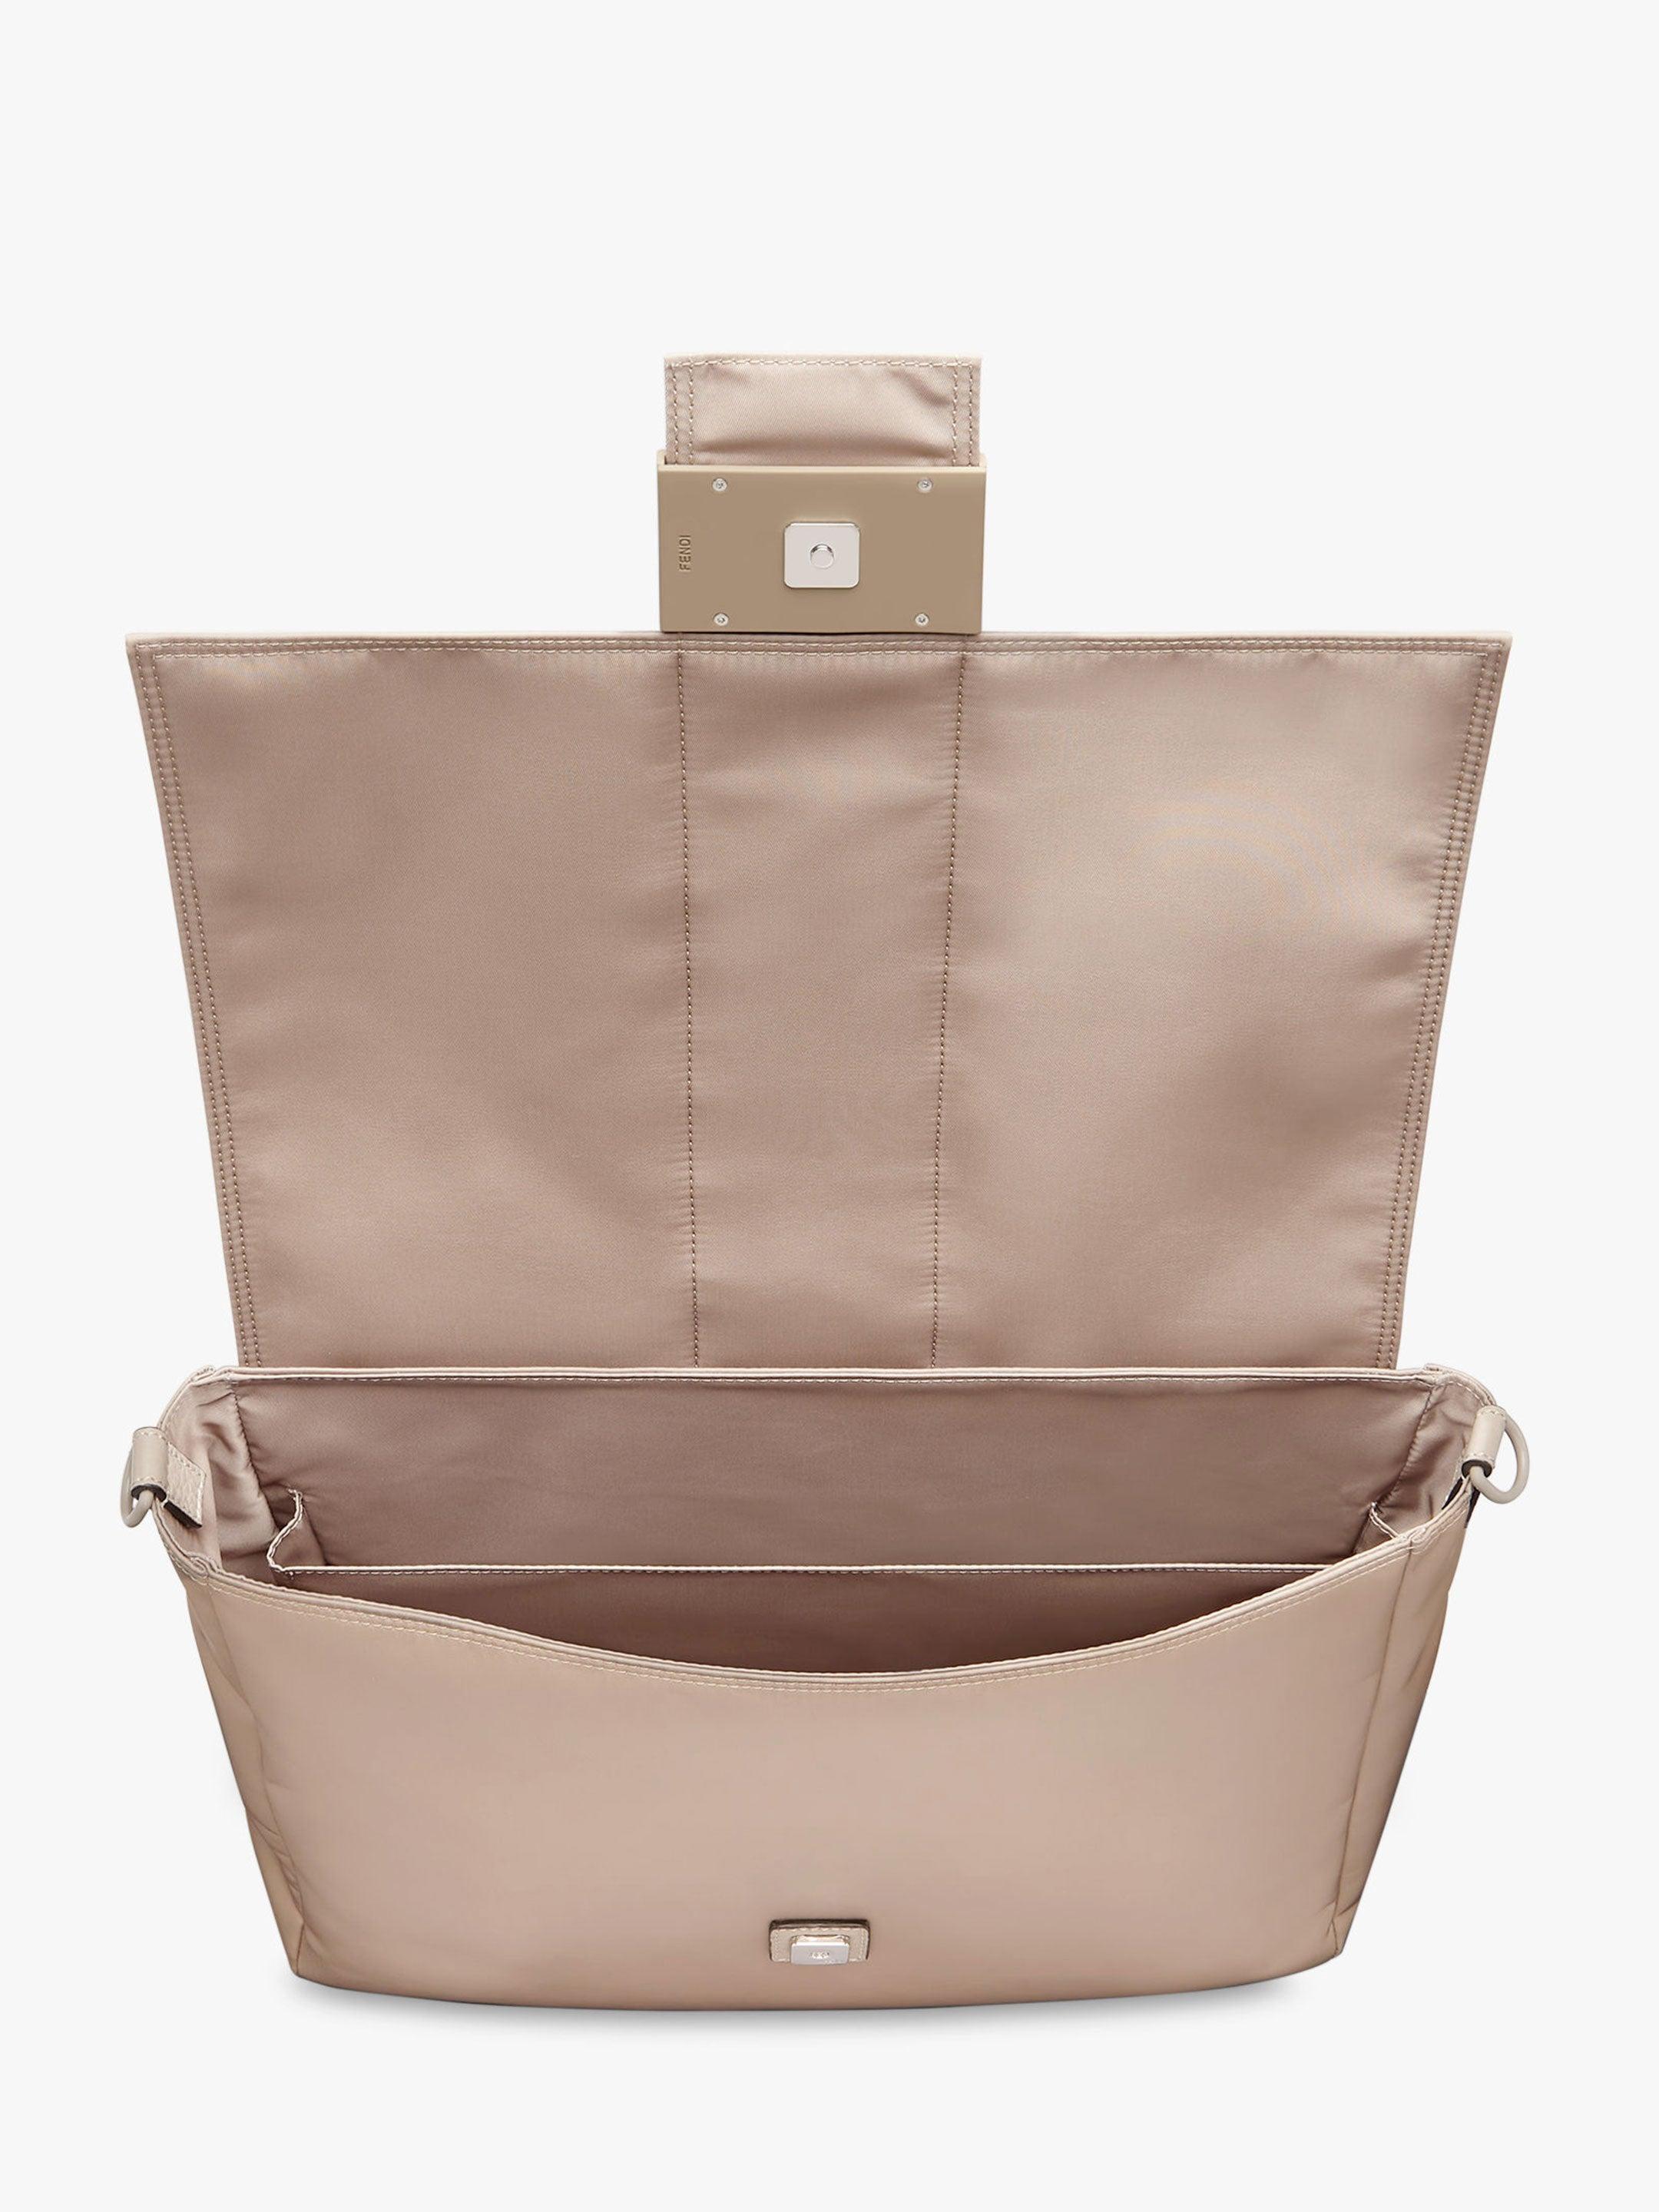 Fendi Baguette Pouch - ShopStyle Messenger Bags